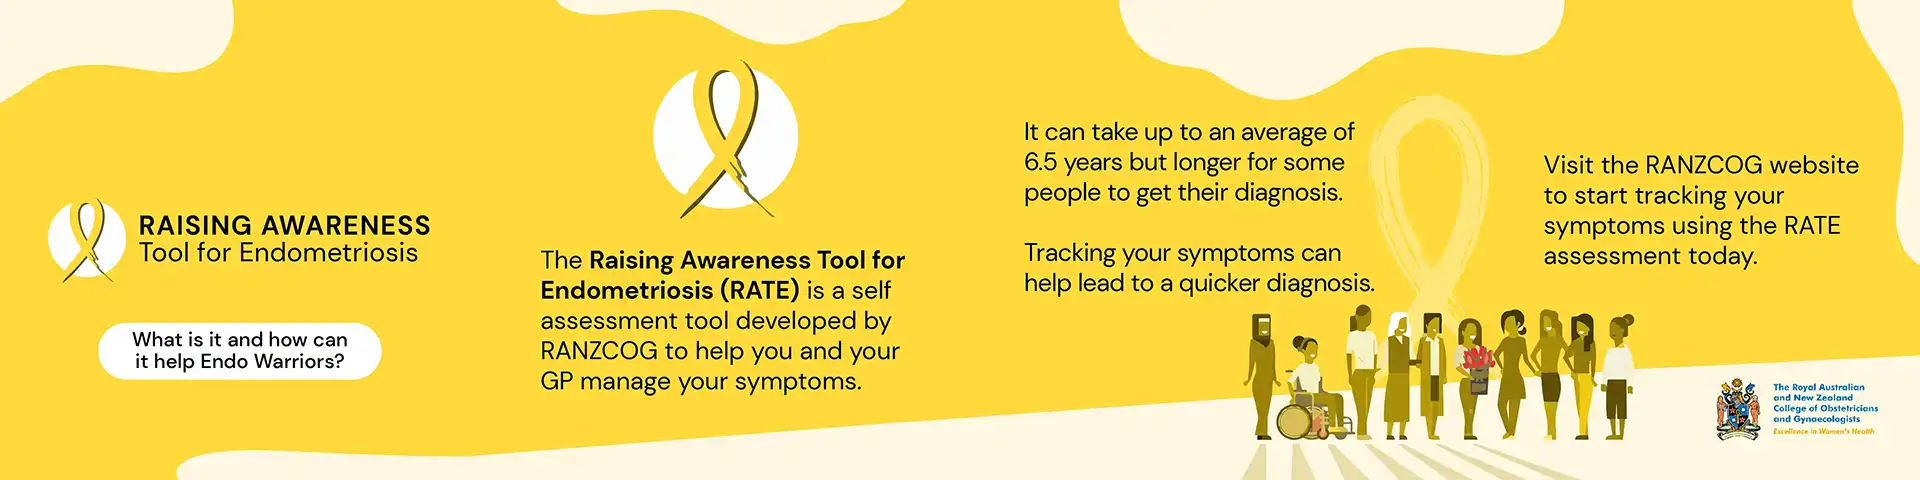 Snack Drawer - Endometriosis Raising Awareness Tool Image